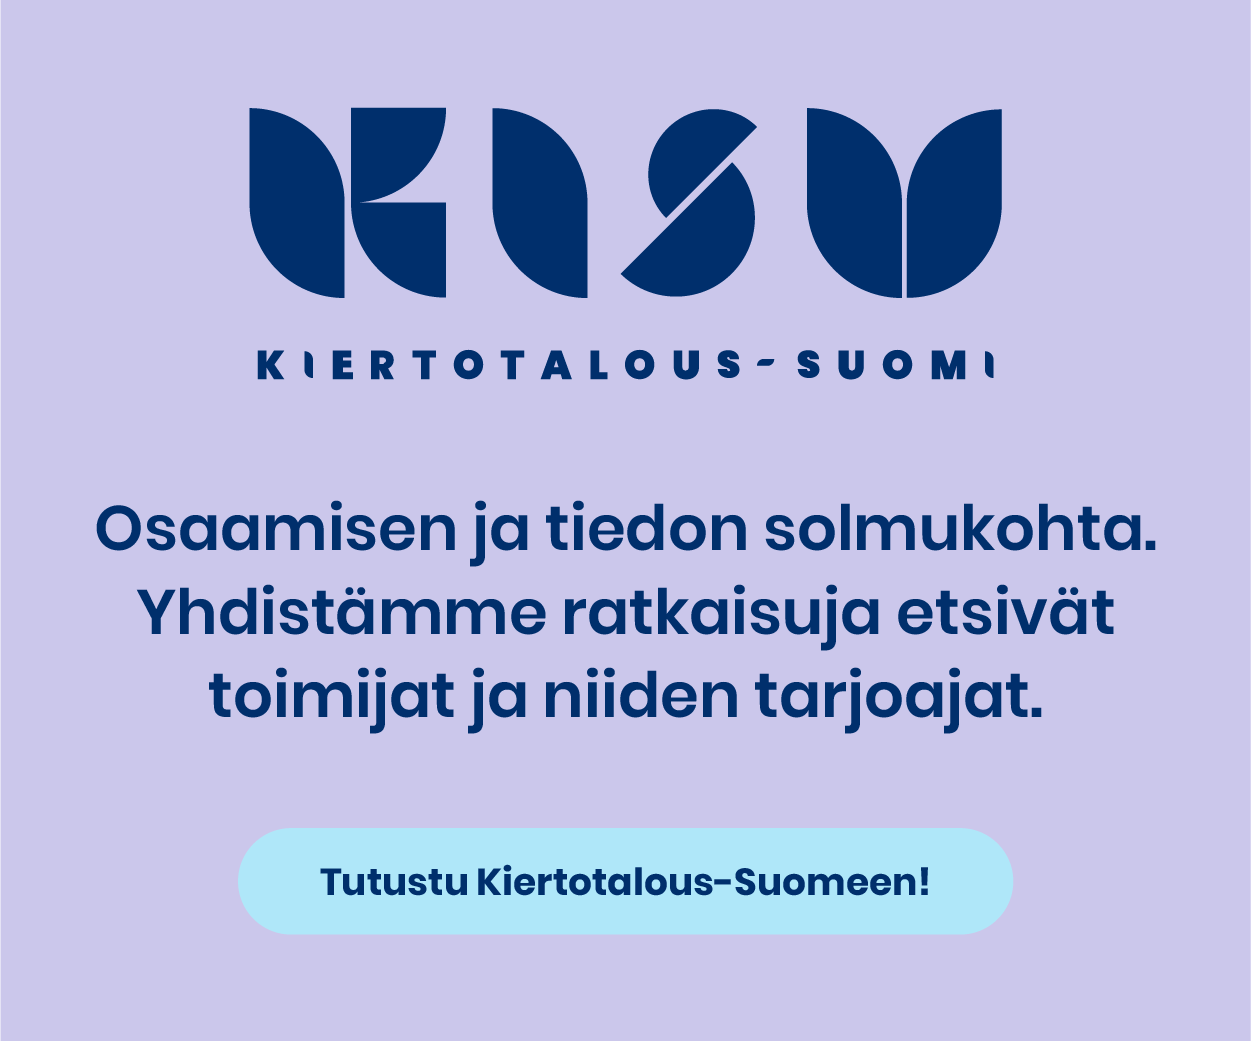 Kiertotalous-Suomi